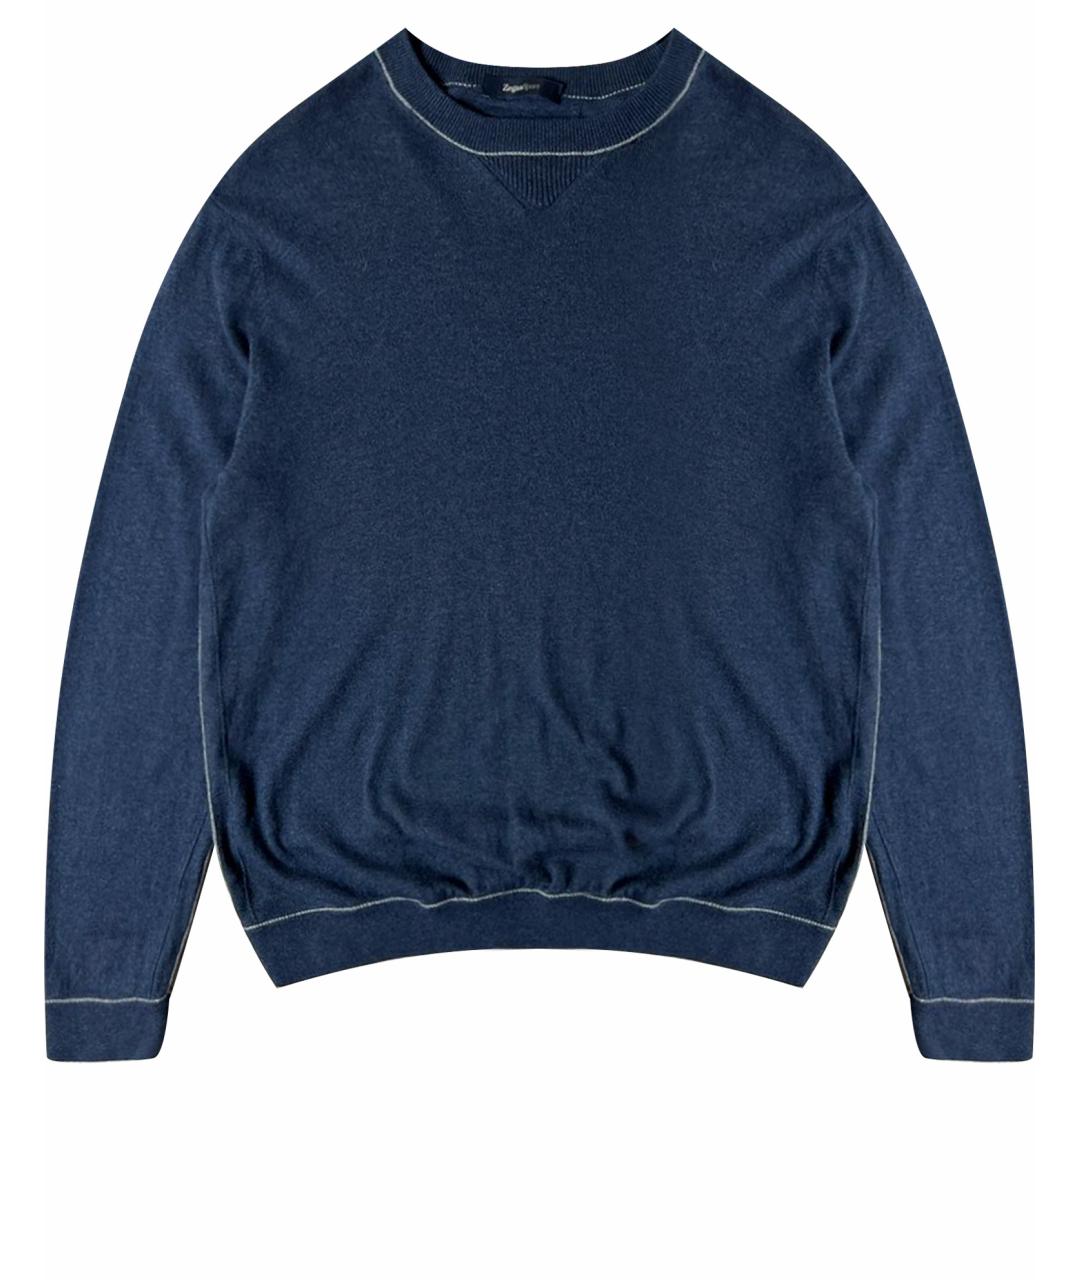 ZEGNA SPORT Темно-синий кашемировый джемпер / свитер, фото 1